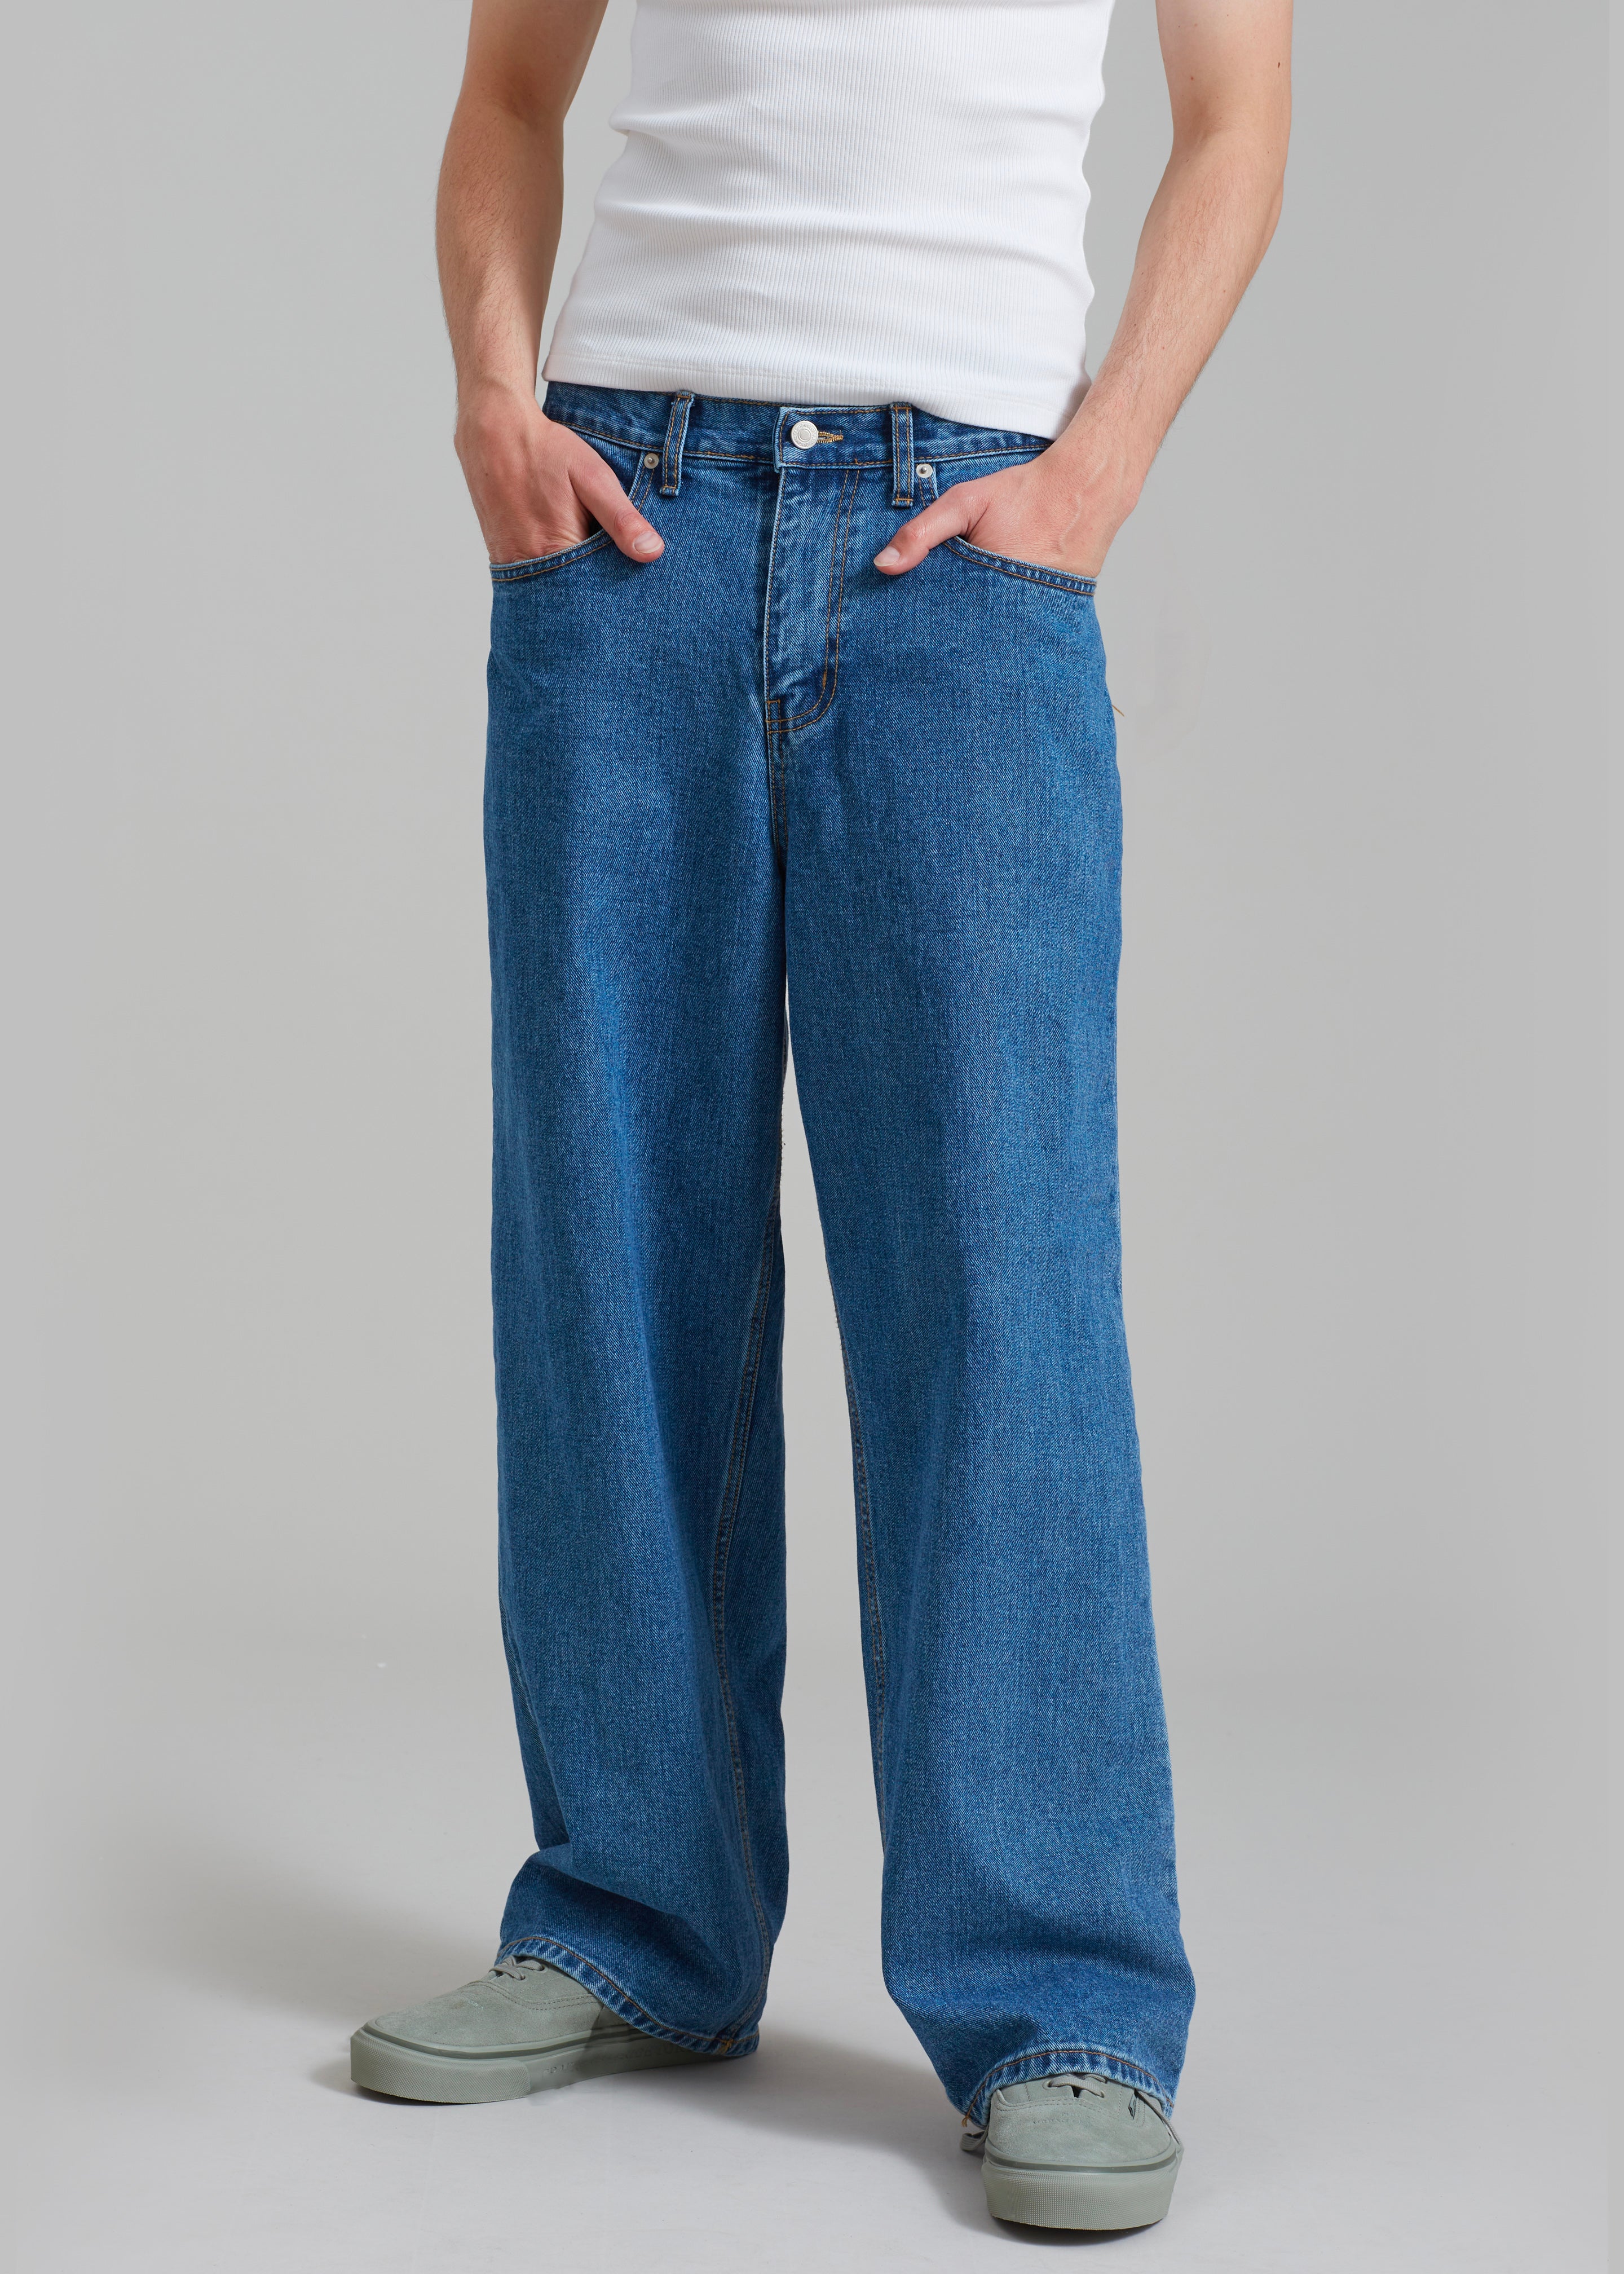 Connor Jeans - Medium Wash - 2